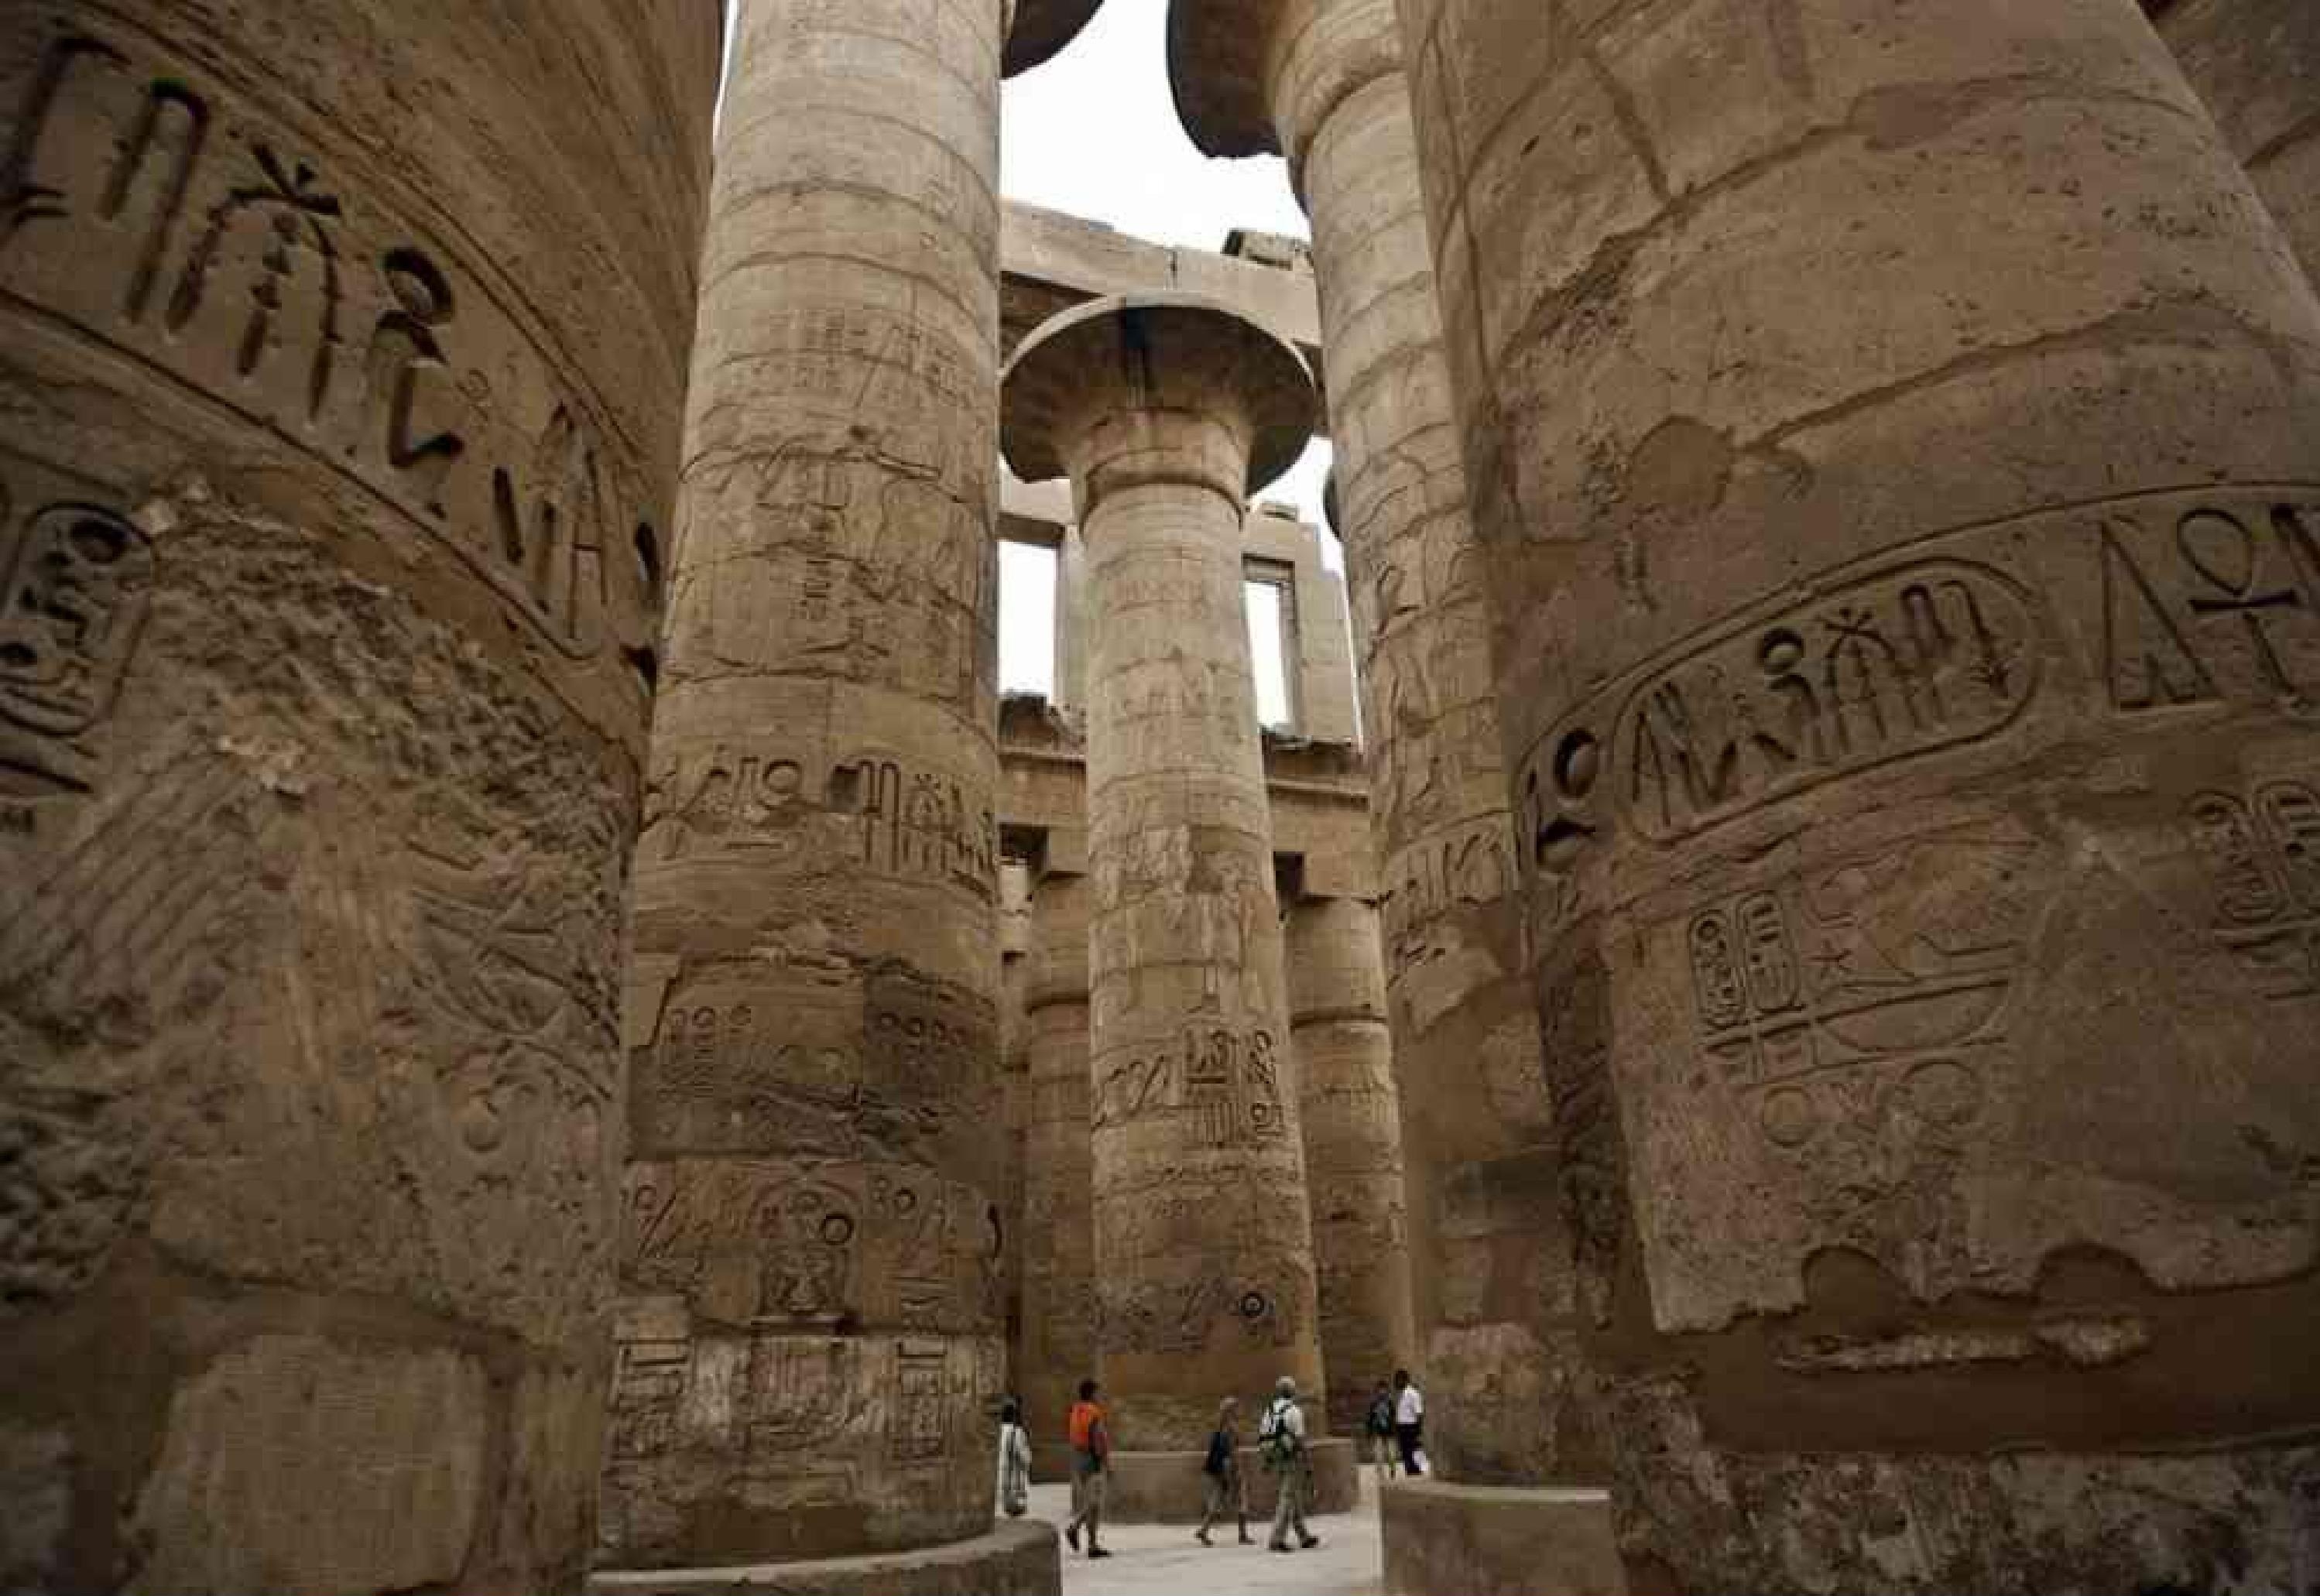 مدينة الشمس عبر العصور فى احتفالات الاقصر عاصمة الثقافة العربية